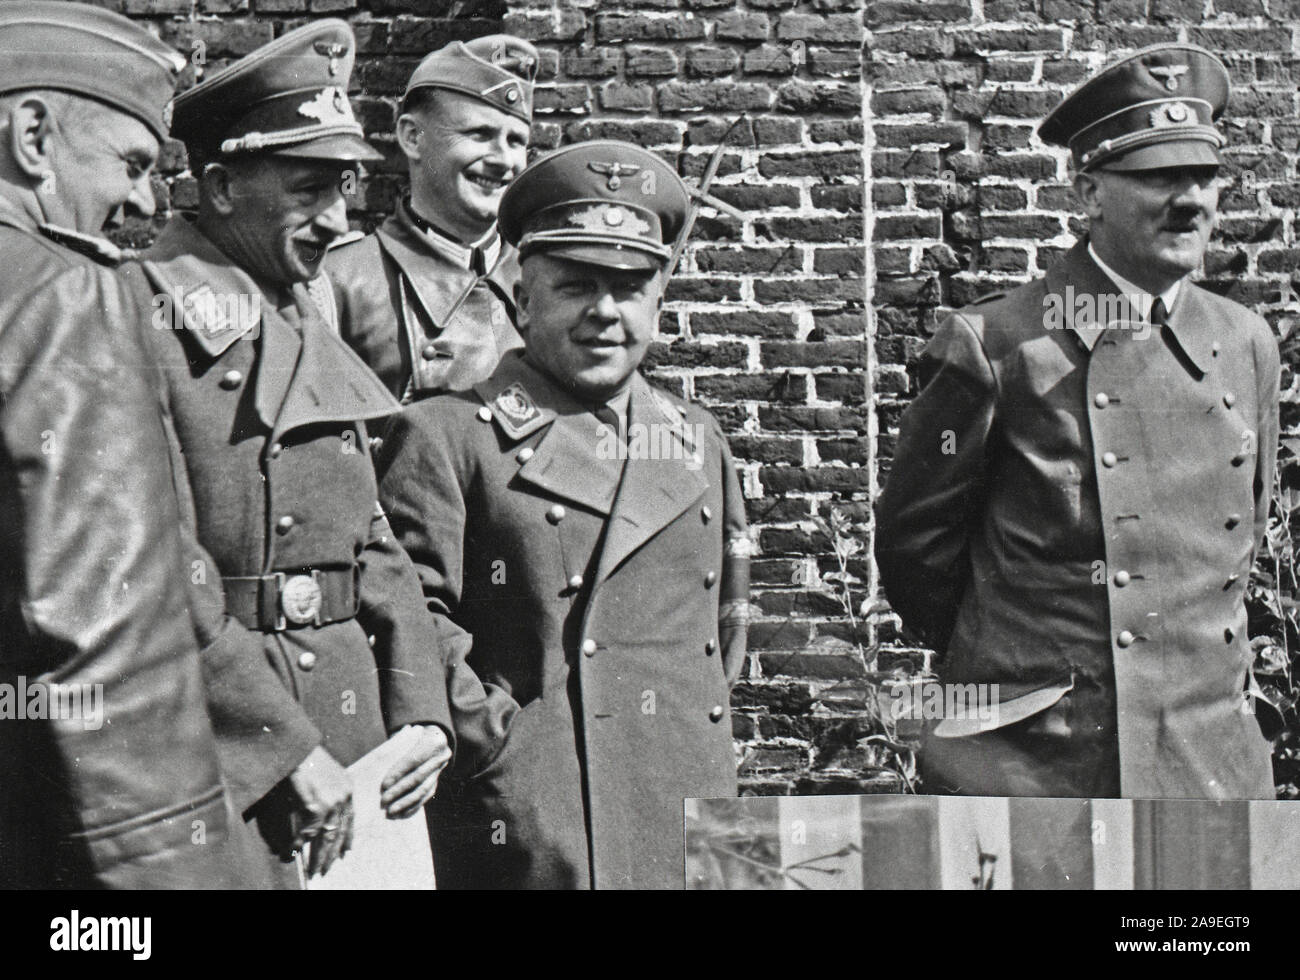 Eva Braun Collection (2) - leader nazi Adolf Hitler avec les soldats ca. fin des années 1930 ou au début des années 1940 Banque D'Images